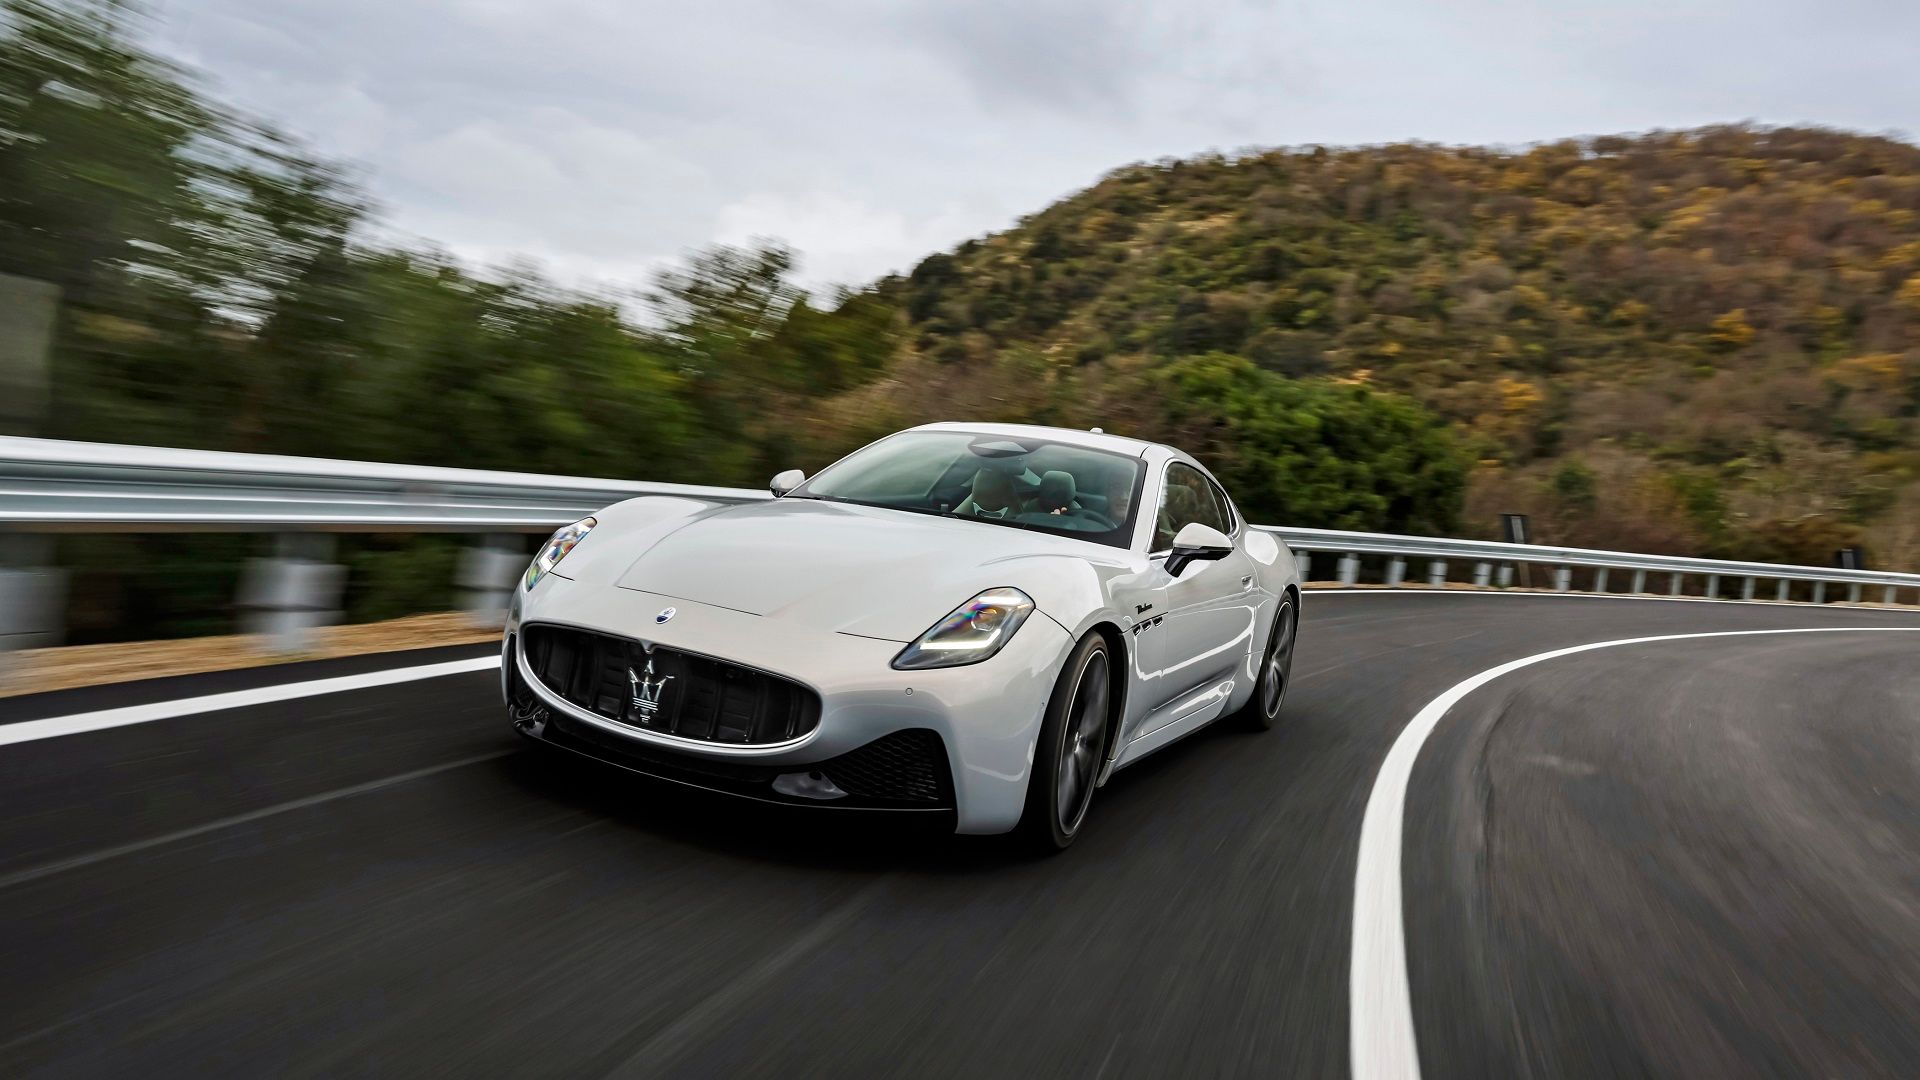 White Maserati GranTurismo on winding road